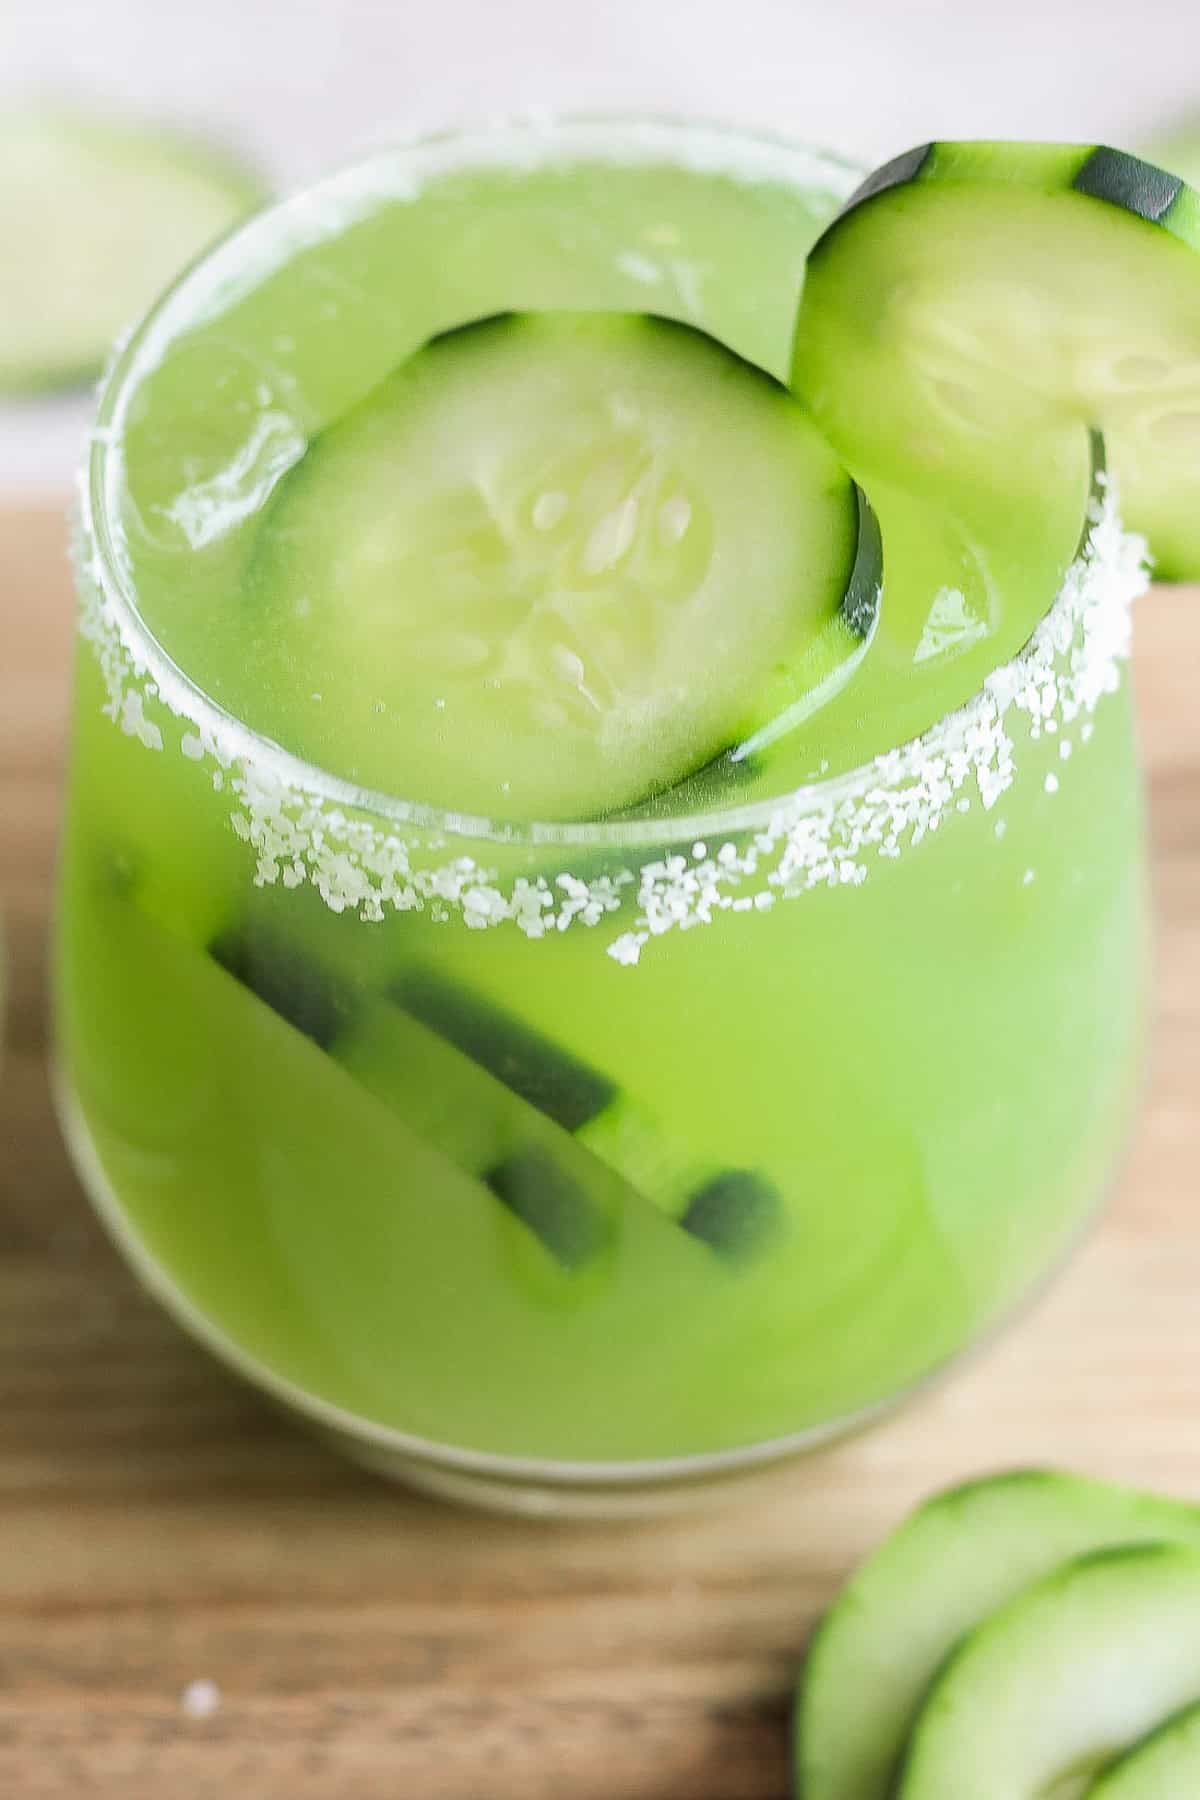 A glass of cucumber margarita in a rimmed glass.